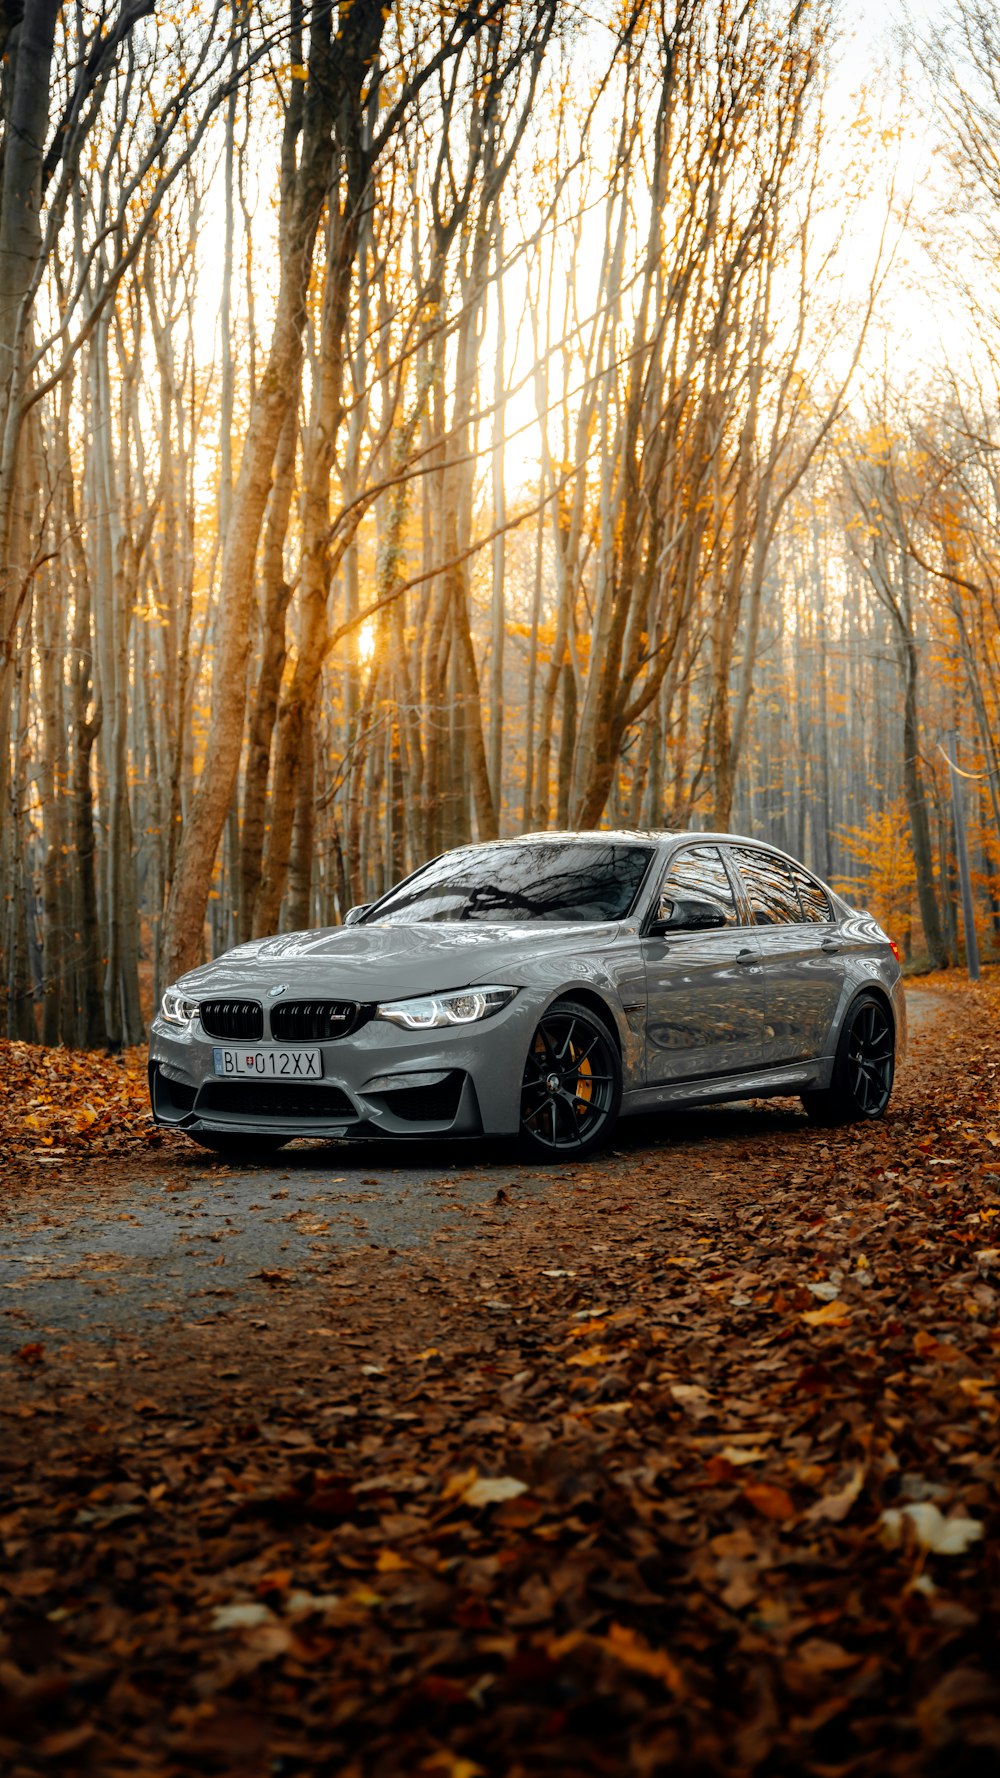 Xem chiếc BMW thiết kế tinh tế và sang trọng trên hình ảnh để khám phá công nghệ đẳng cấp của xe cao cấp này. Bạn sẽ không thể bỏ qua sự kết hợp độc đáo của sức mạnh và đẳng cấp trong chiếc xe BMW này.